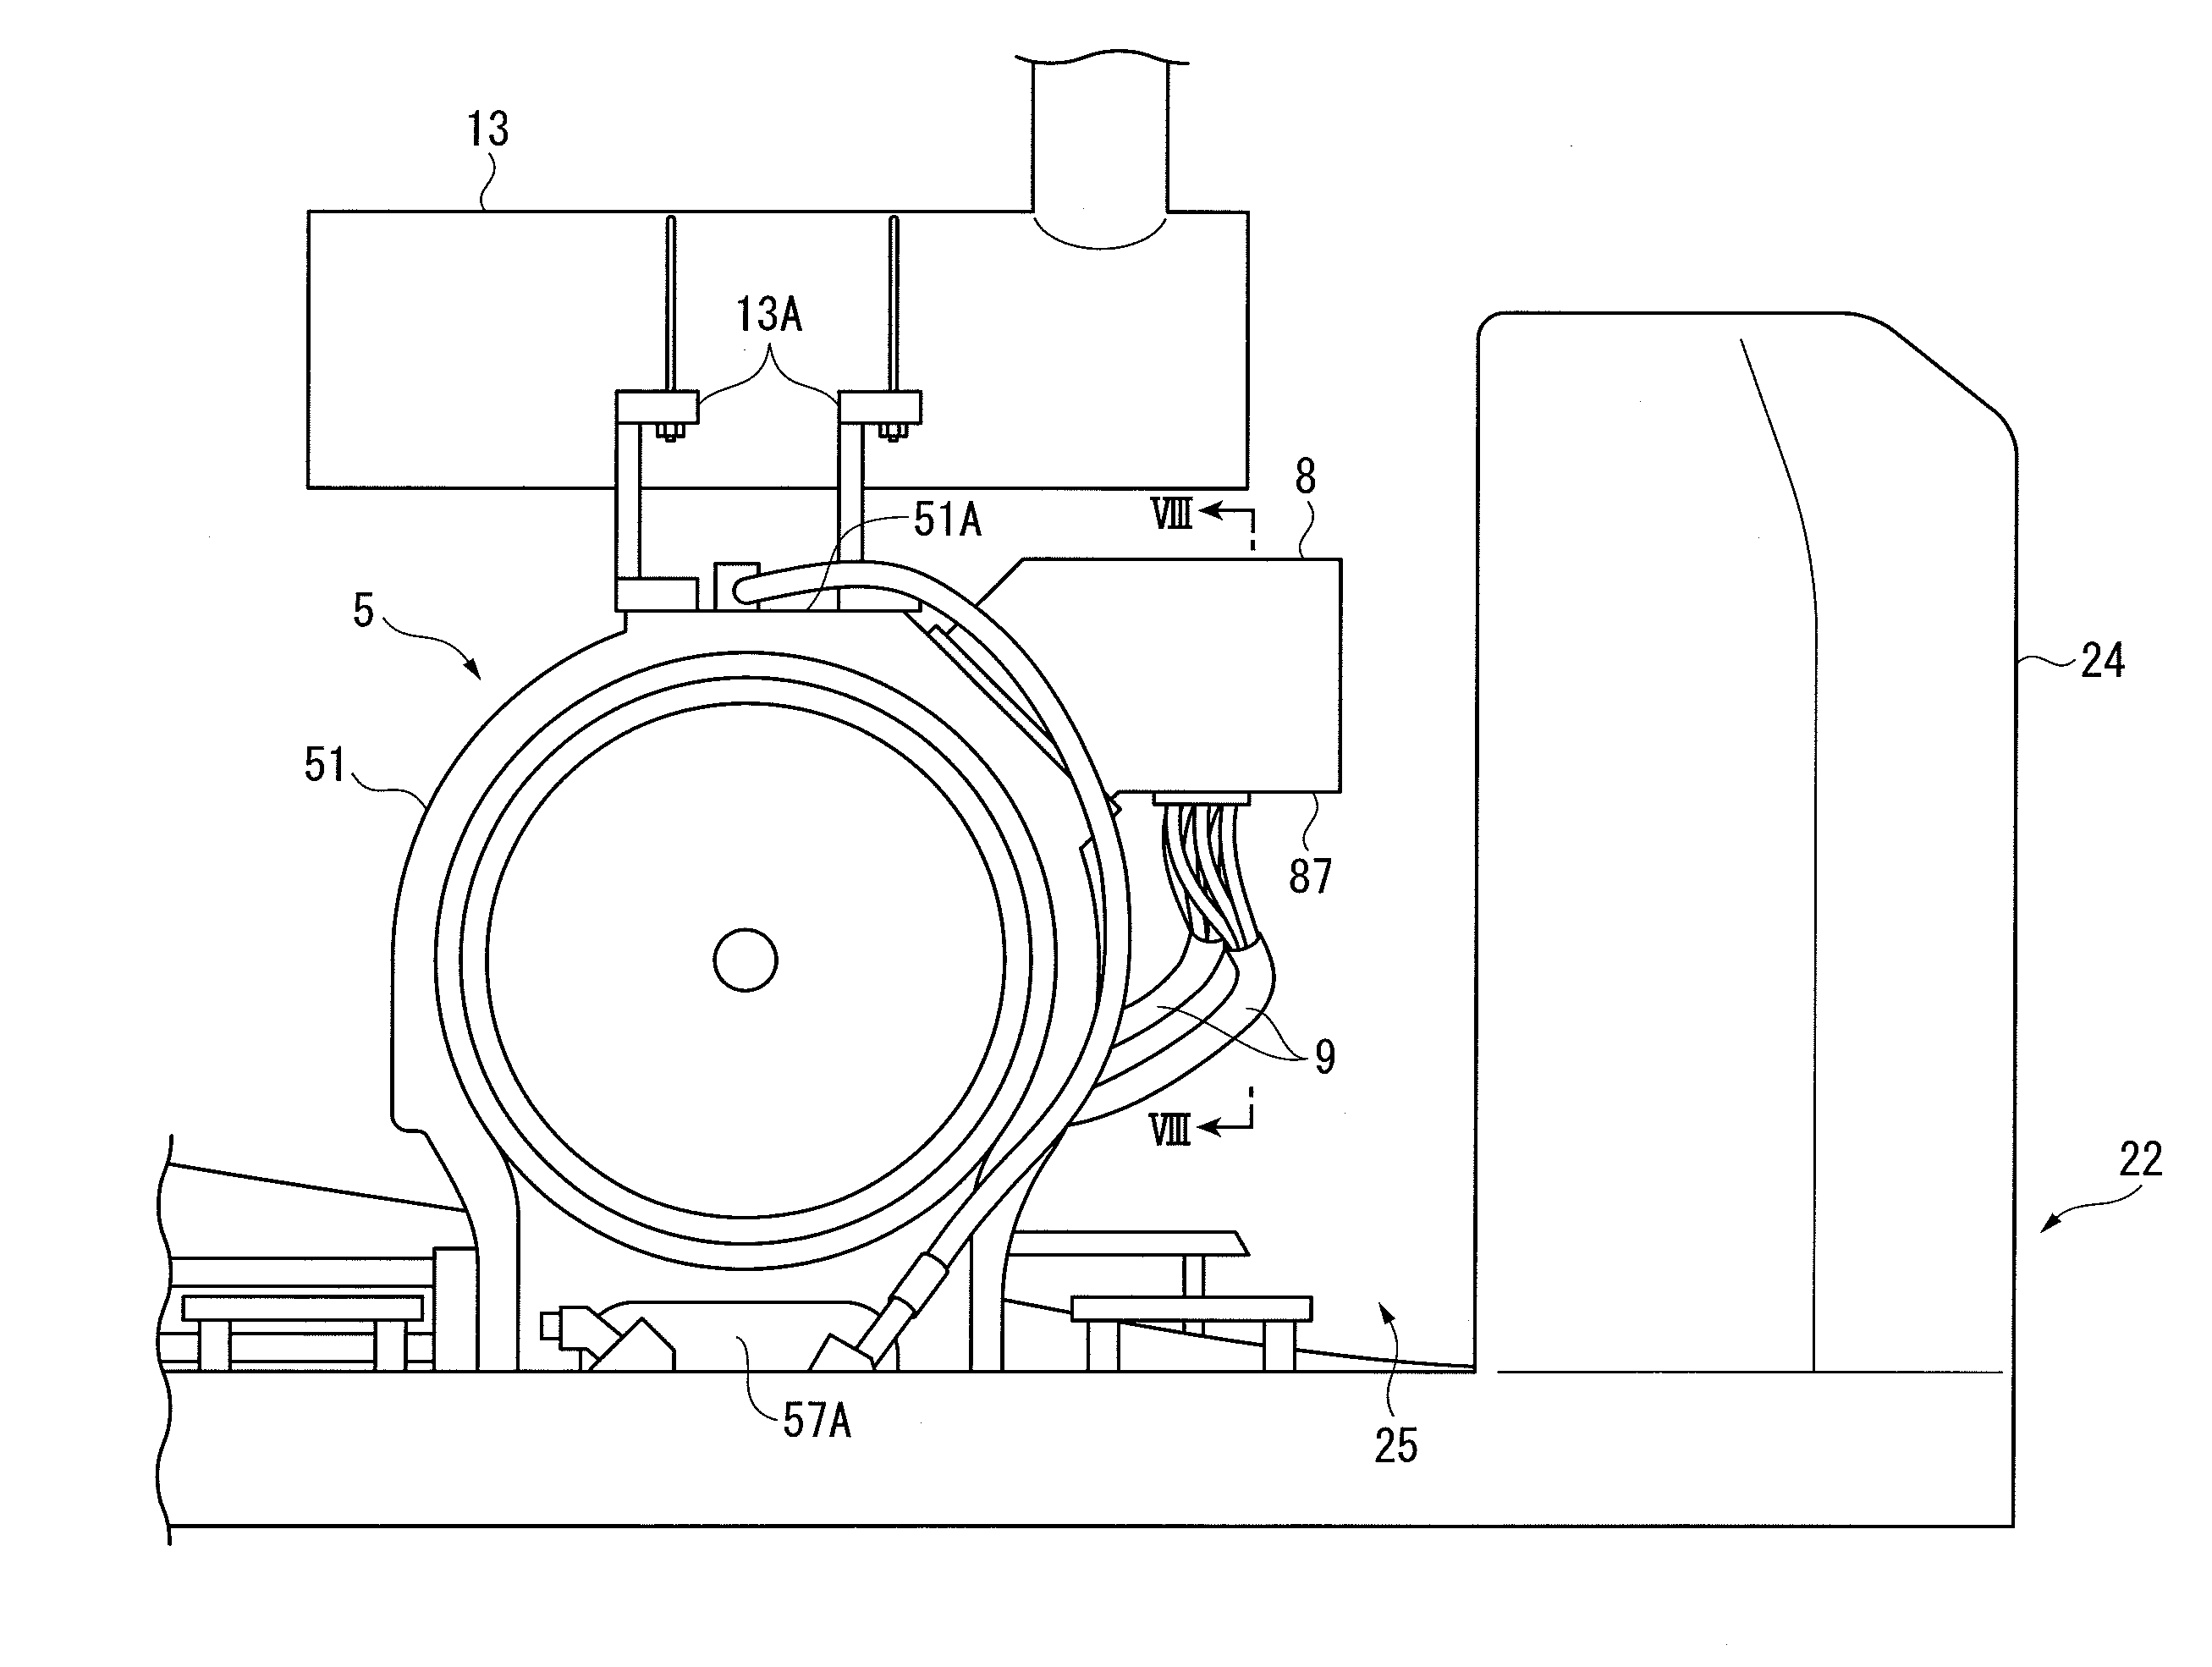 Generator Motor and Work Machine